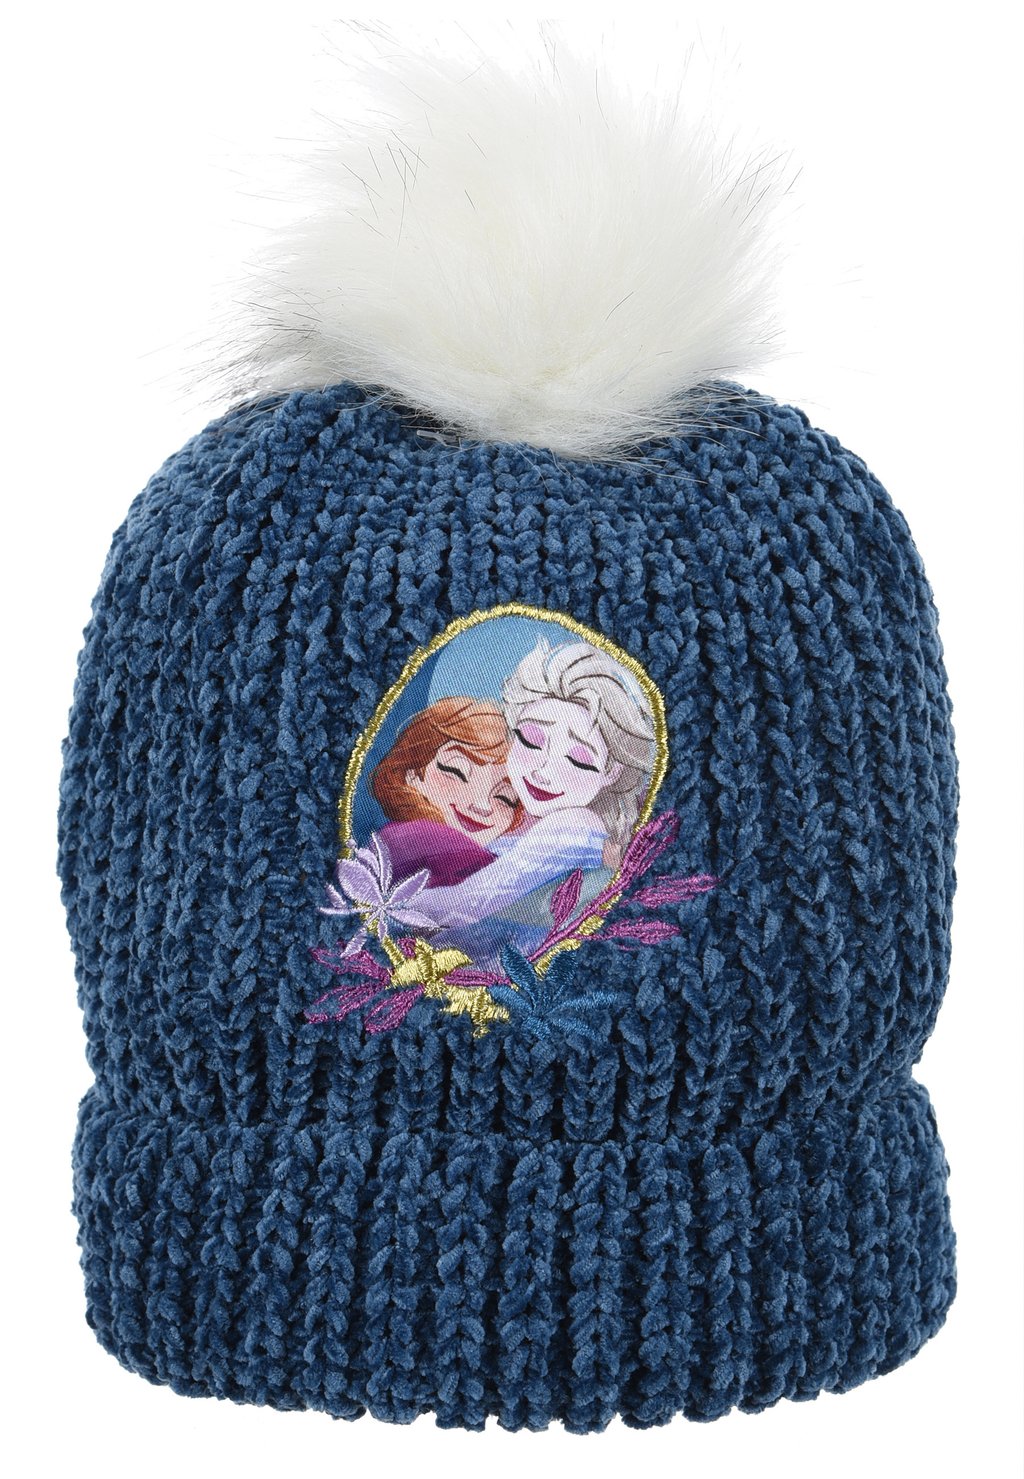 Шапка ELSA ANNA Disney FROZEN, цвет dunkel blau шапка elsa winter disney frozen цвет blau